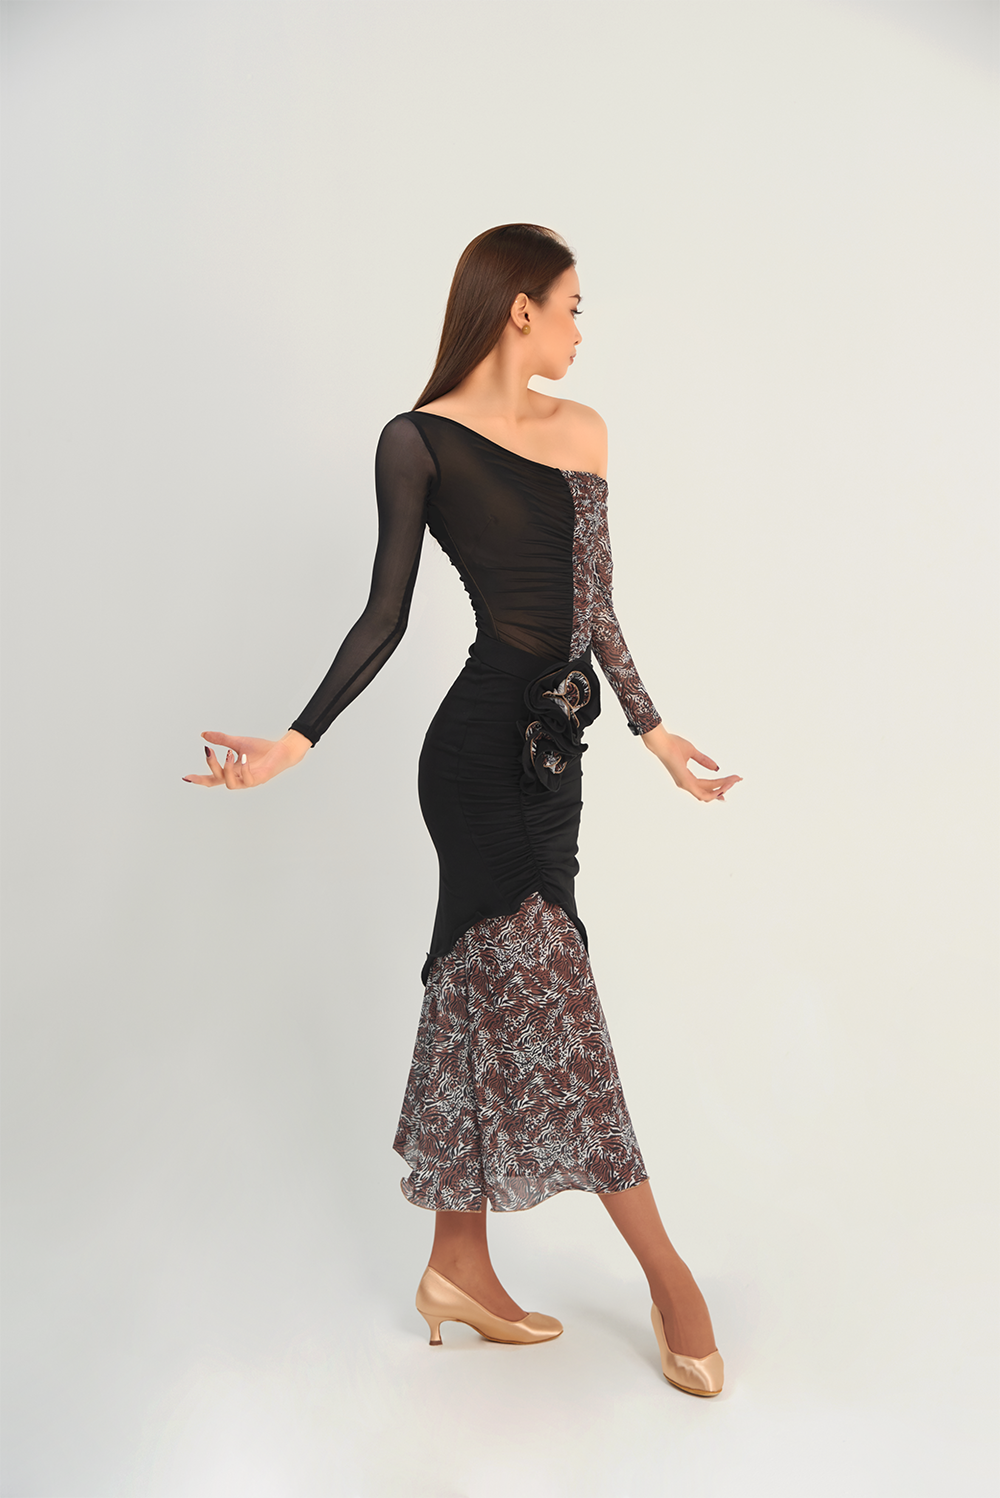 DANCE QUEEN 660-2 leopard print skirt